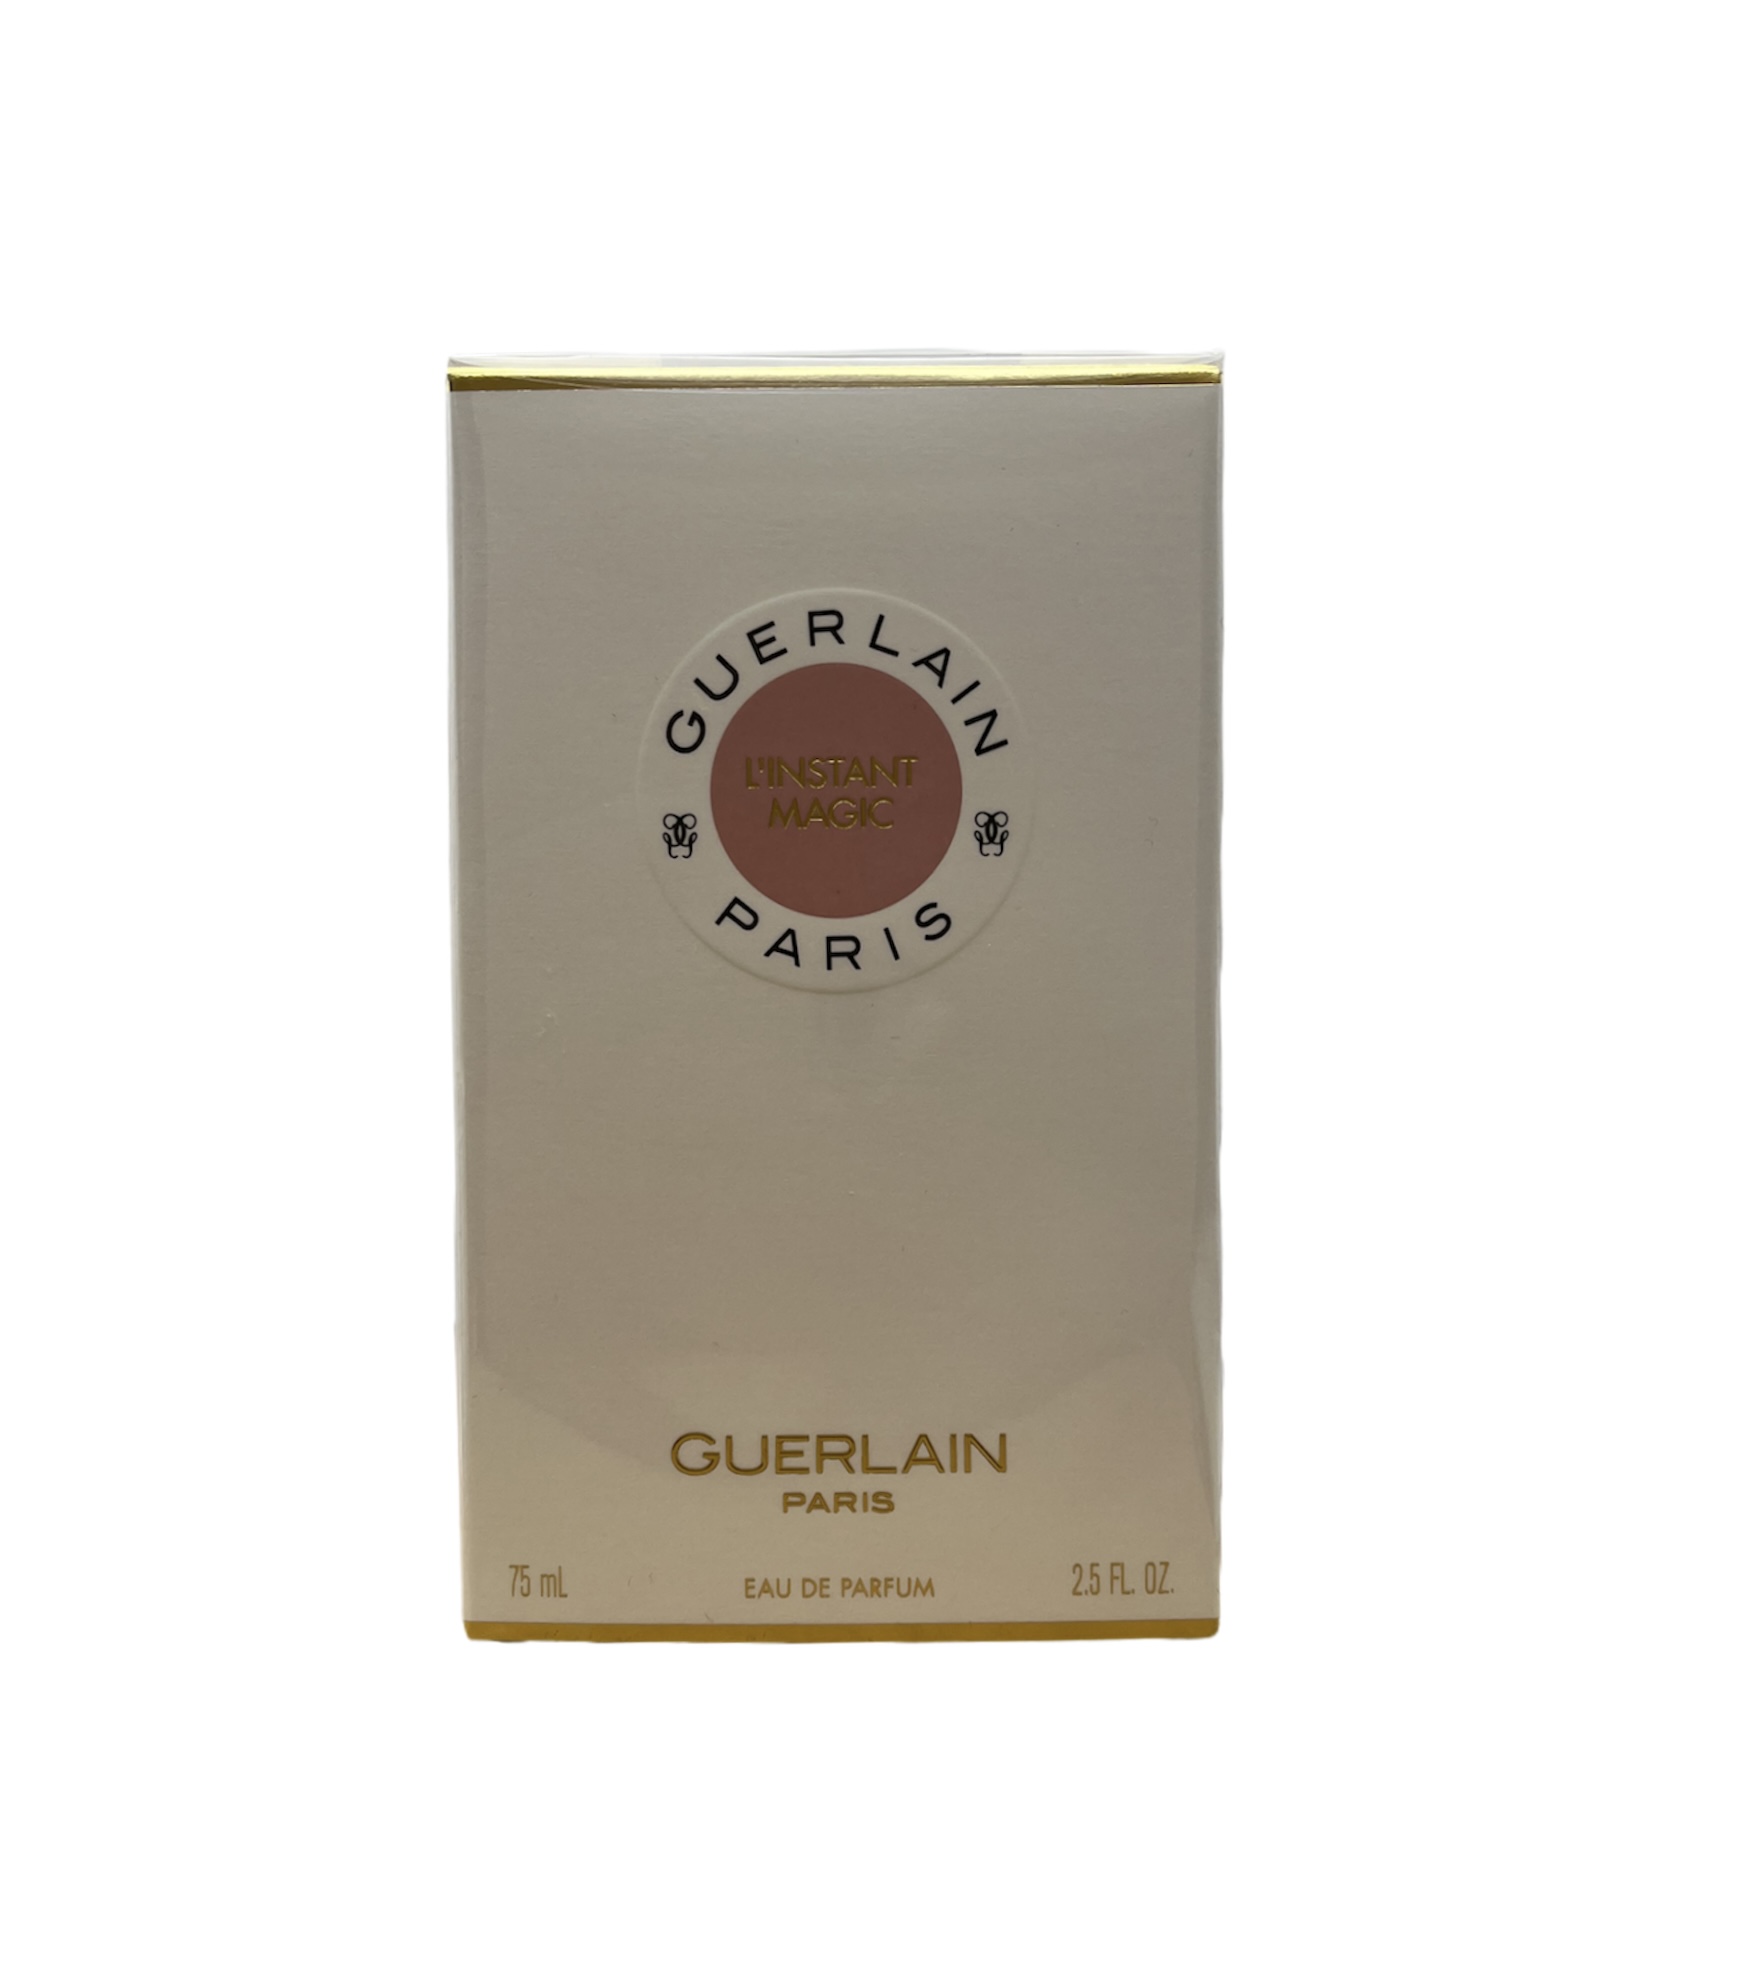  Guerlain L'Instant Magic Eau de Parfum 75ml 